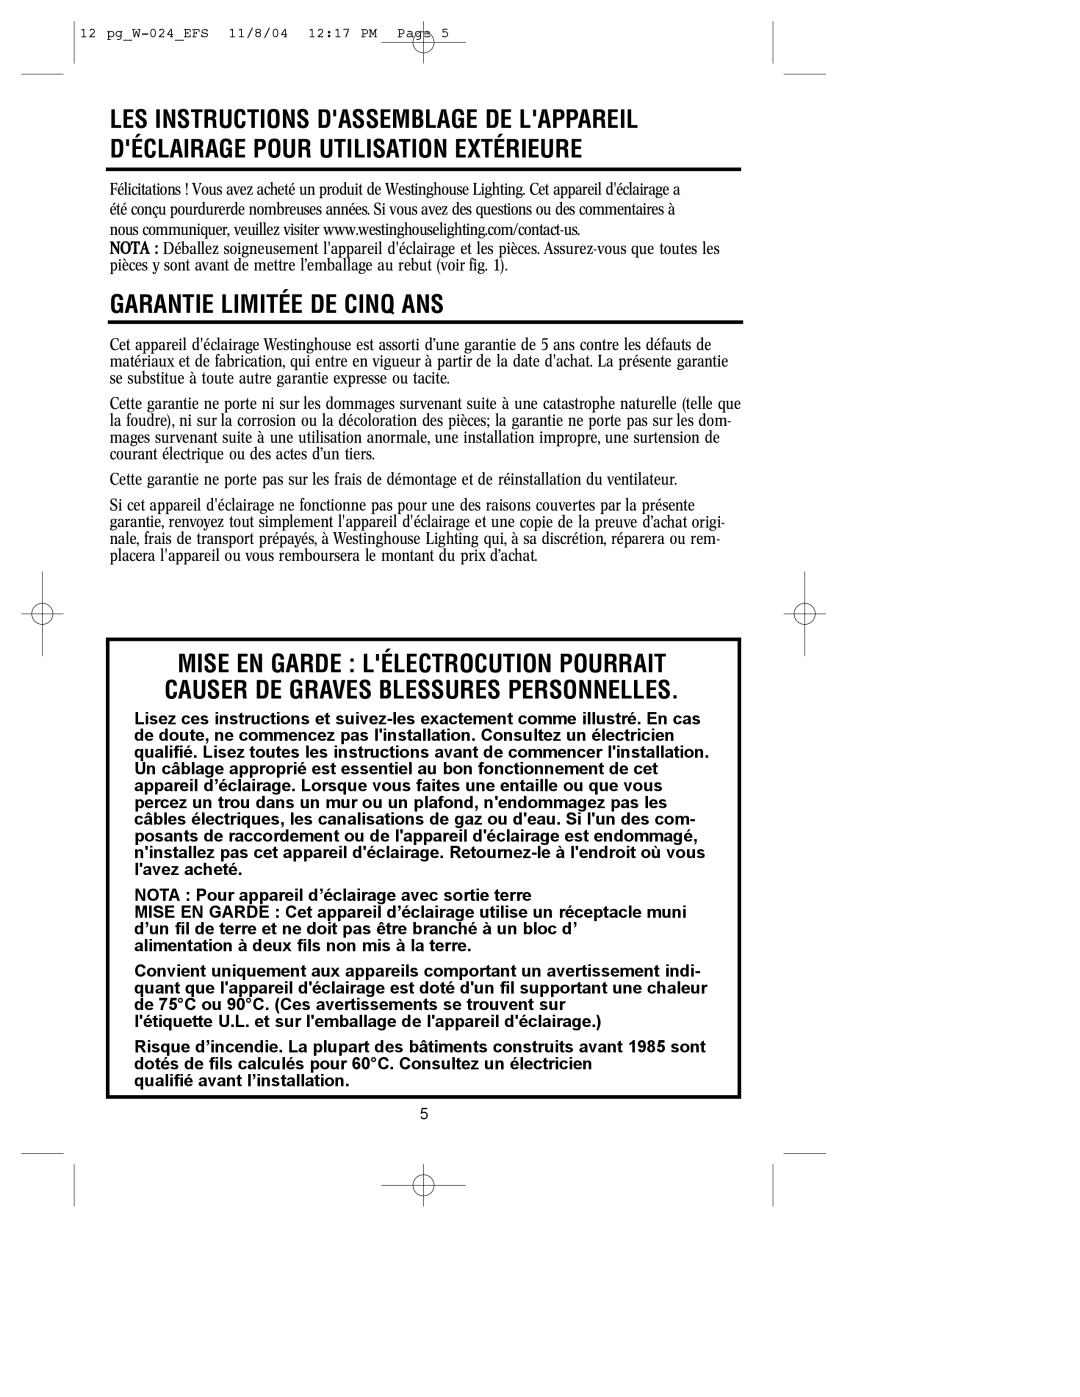 Westinghouse W-024 owner manual Garantie Limitée De Cinq Ans 